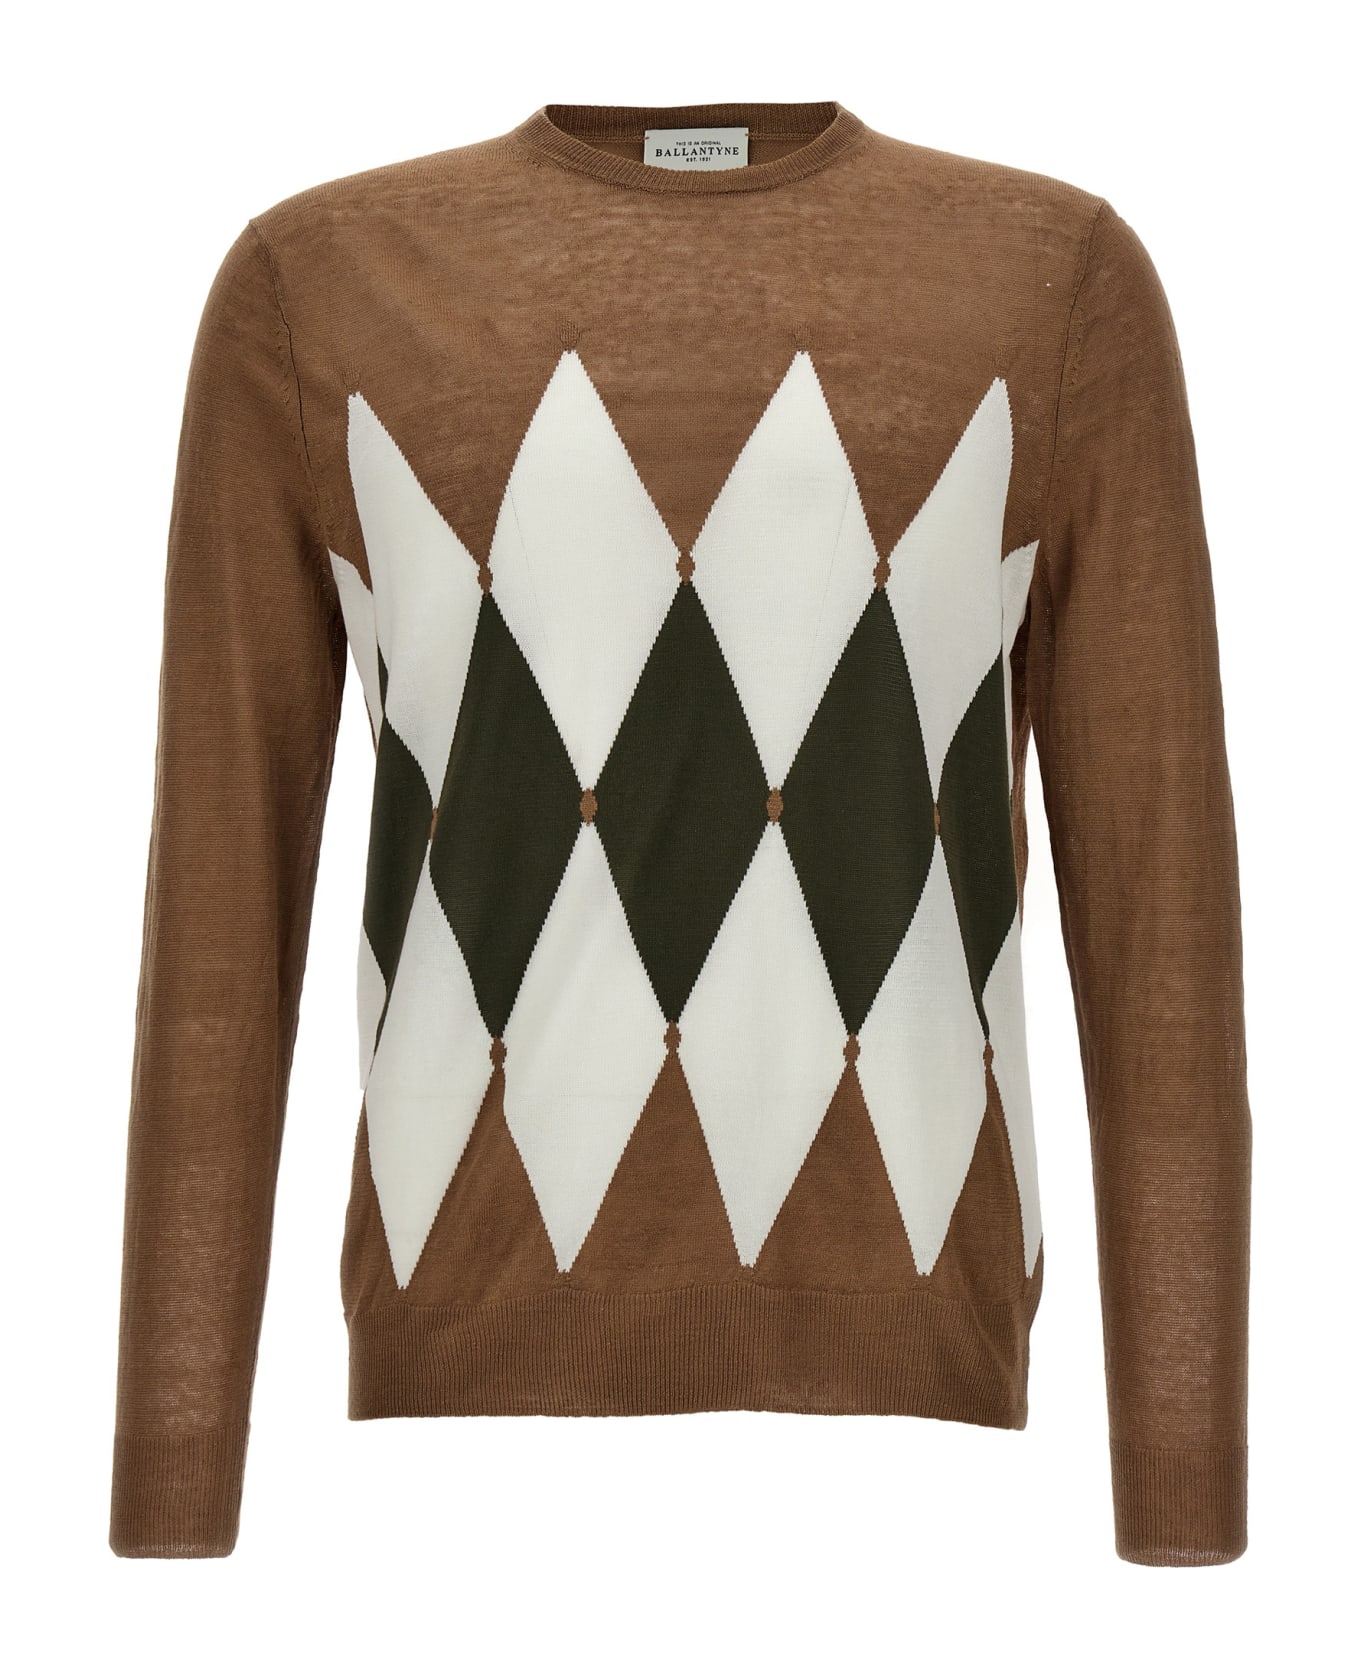 Ballantyne 'argyle' Sweater - Brown ニットウェア